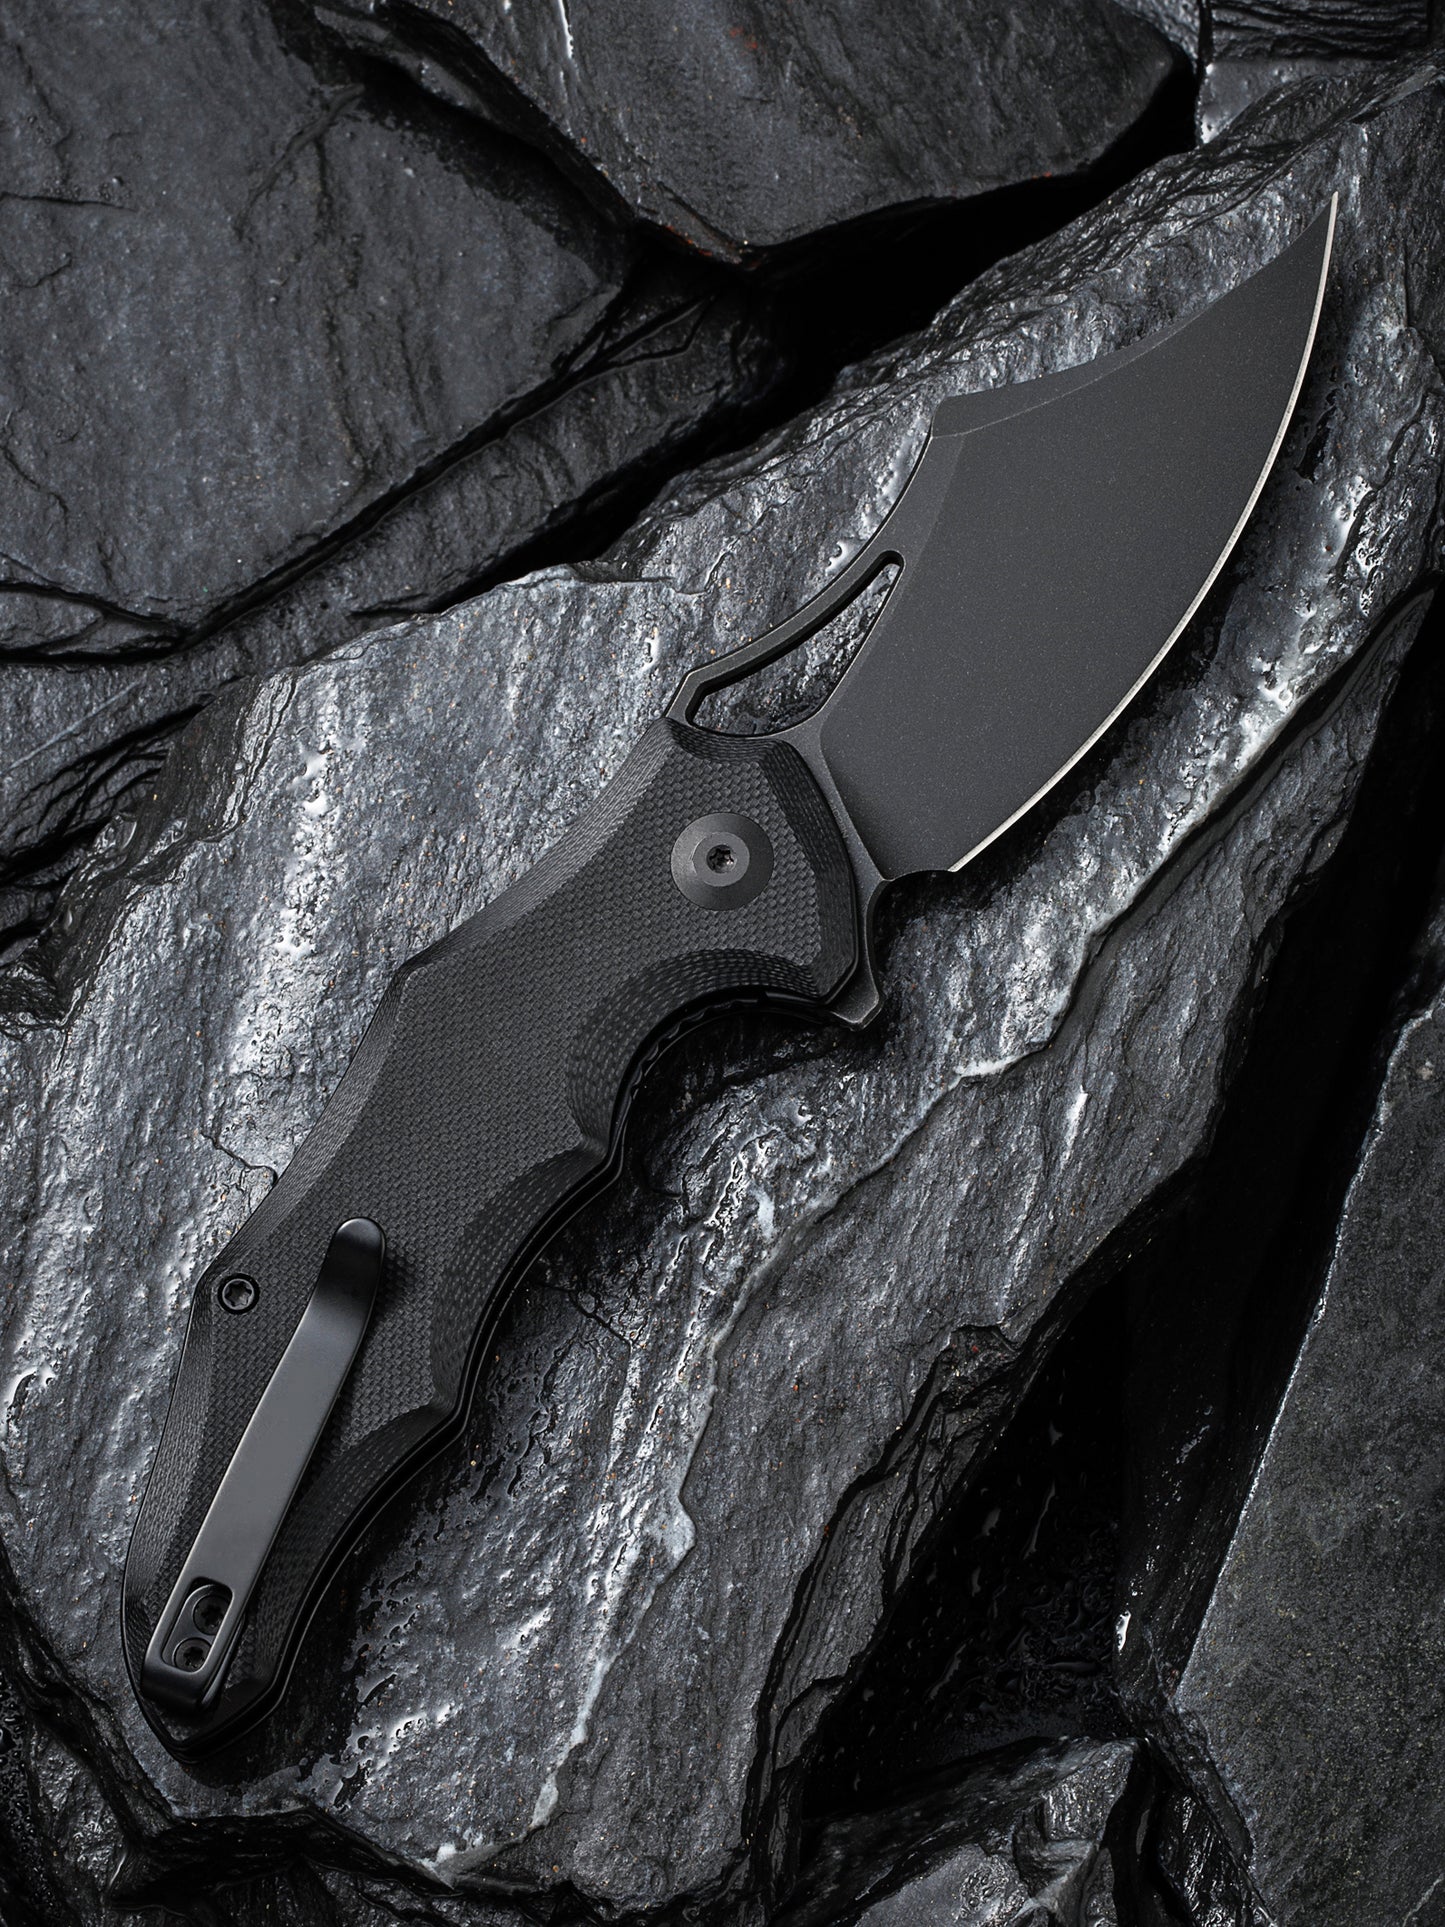 Civivi Chiro 3.1" Sandvik 14C28N Black G10 Folding Knife C23046-1